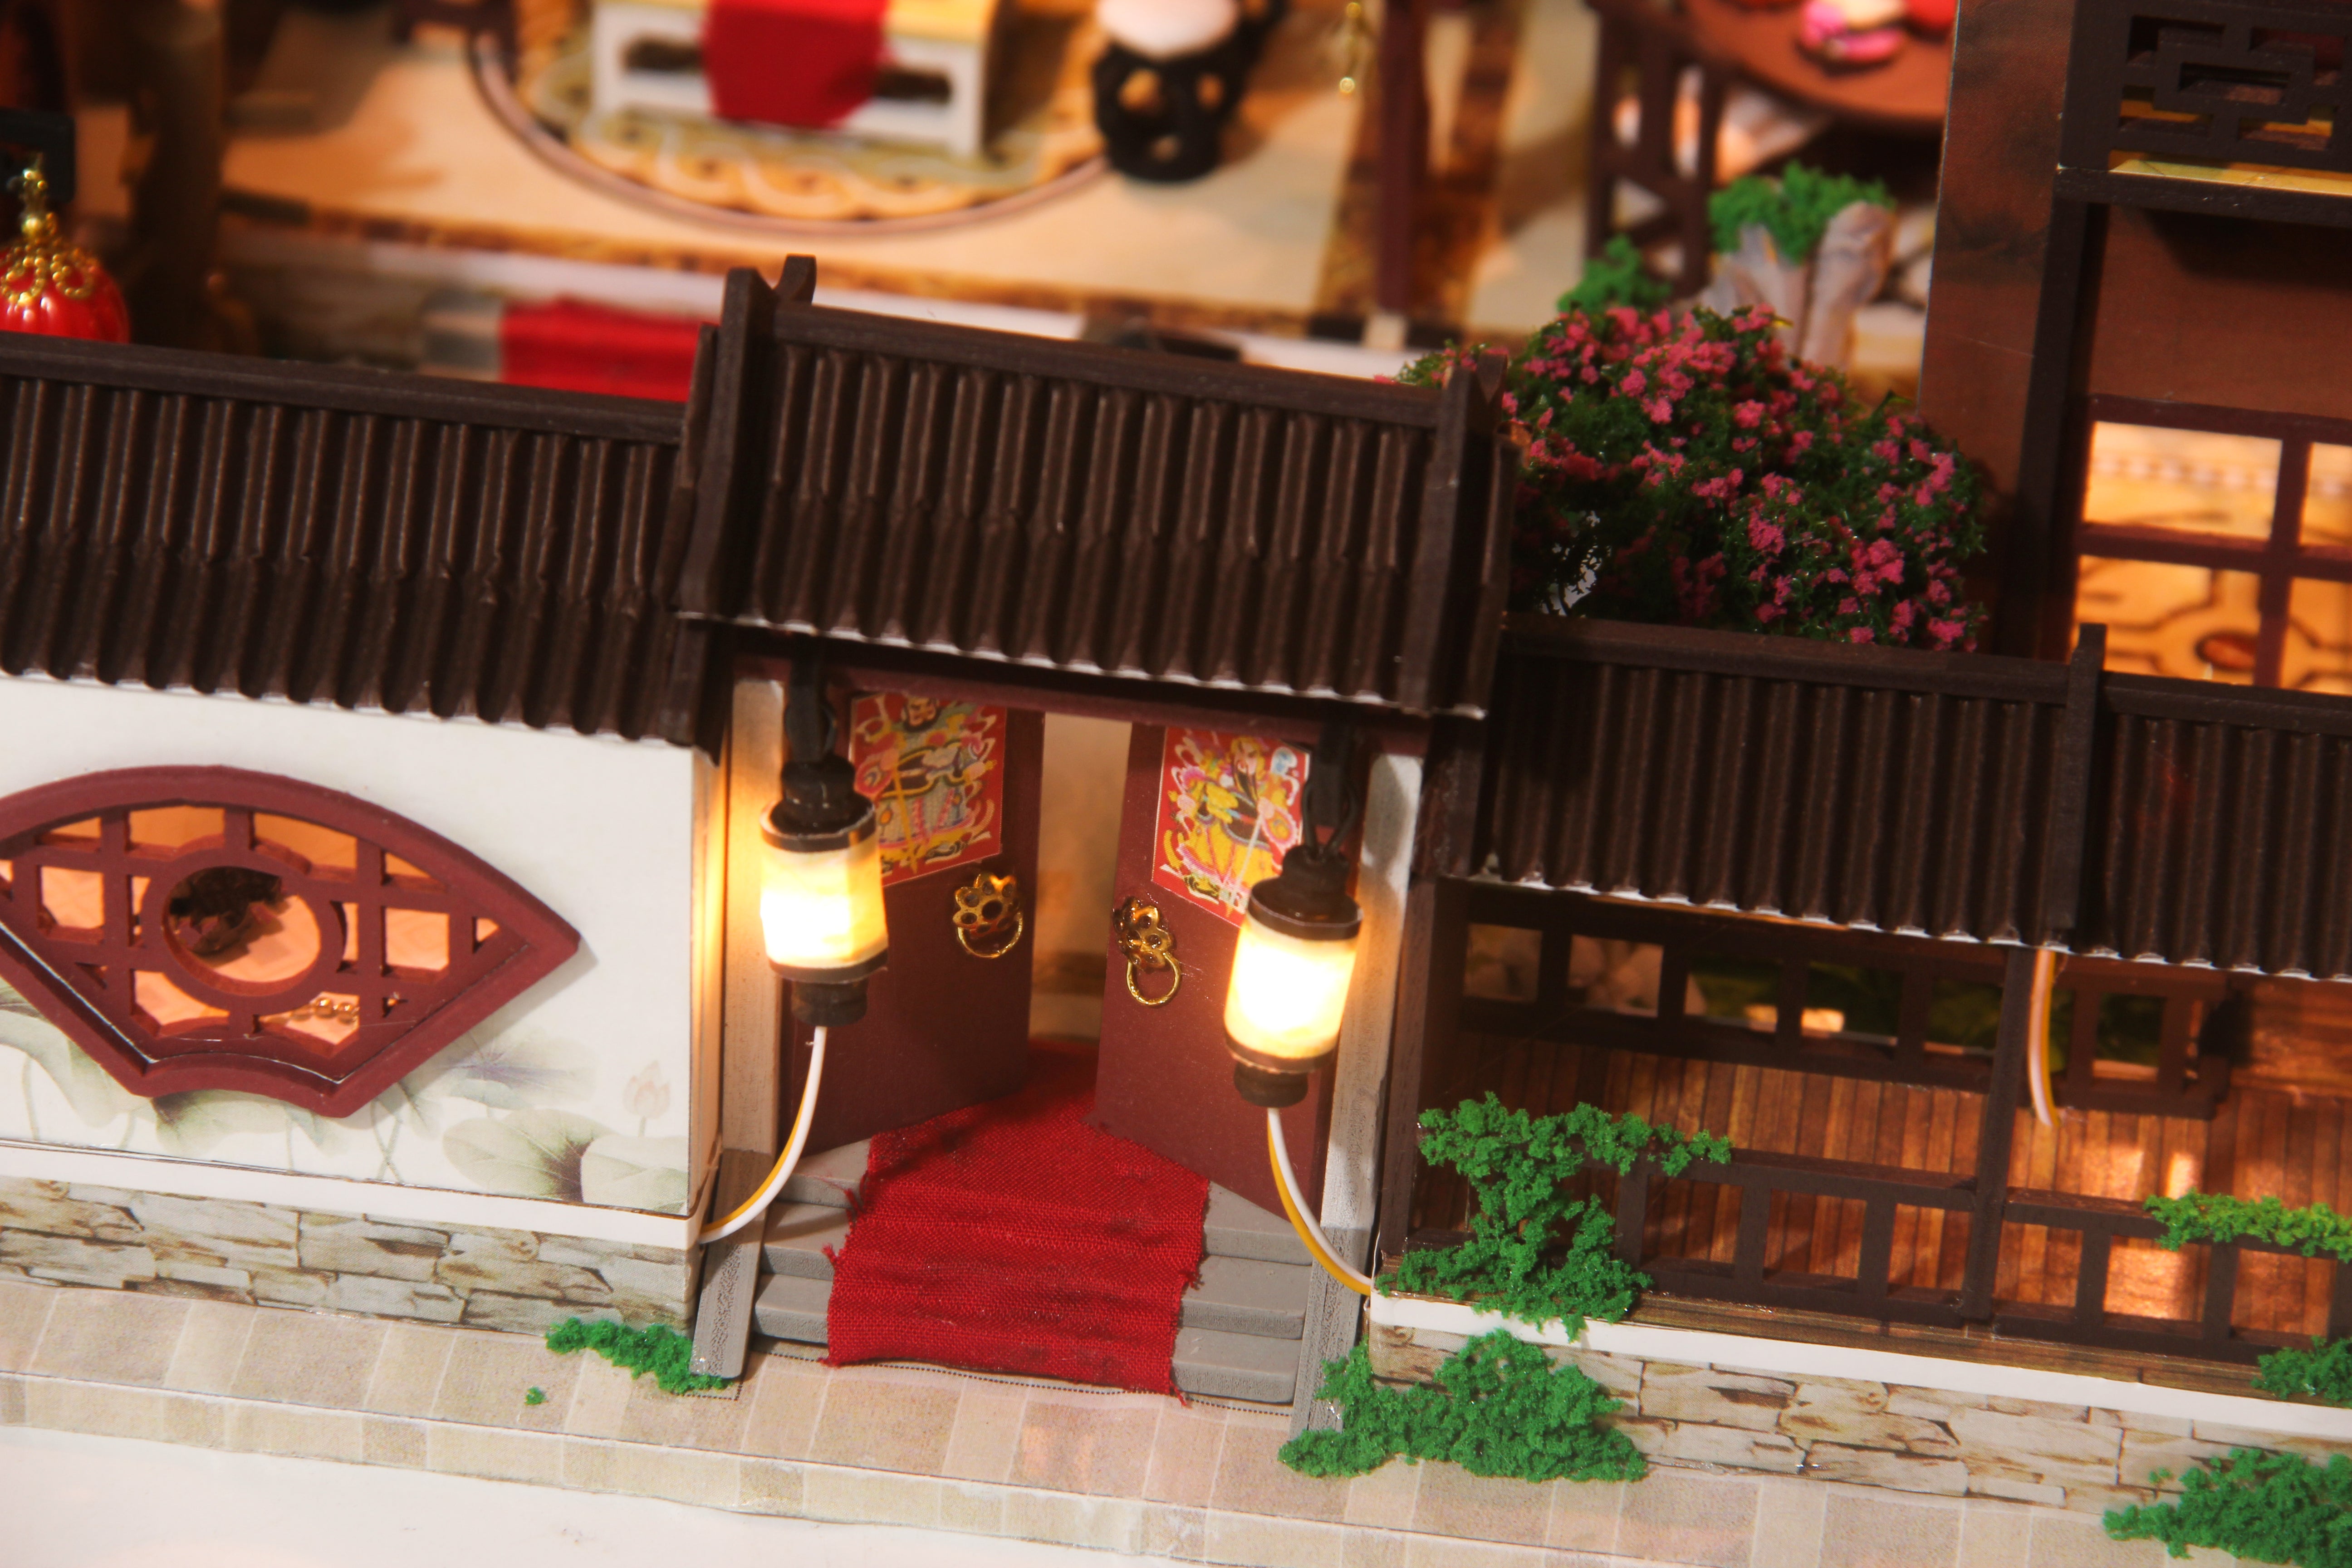 中国古屋 DIY 木制娃娃屋套件带家具 | 生日礼物 |爱好